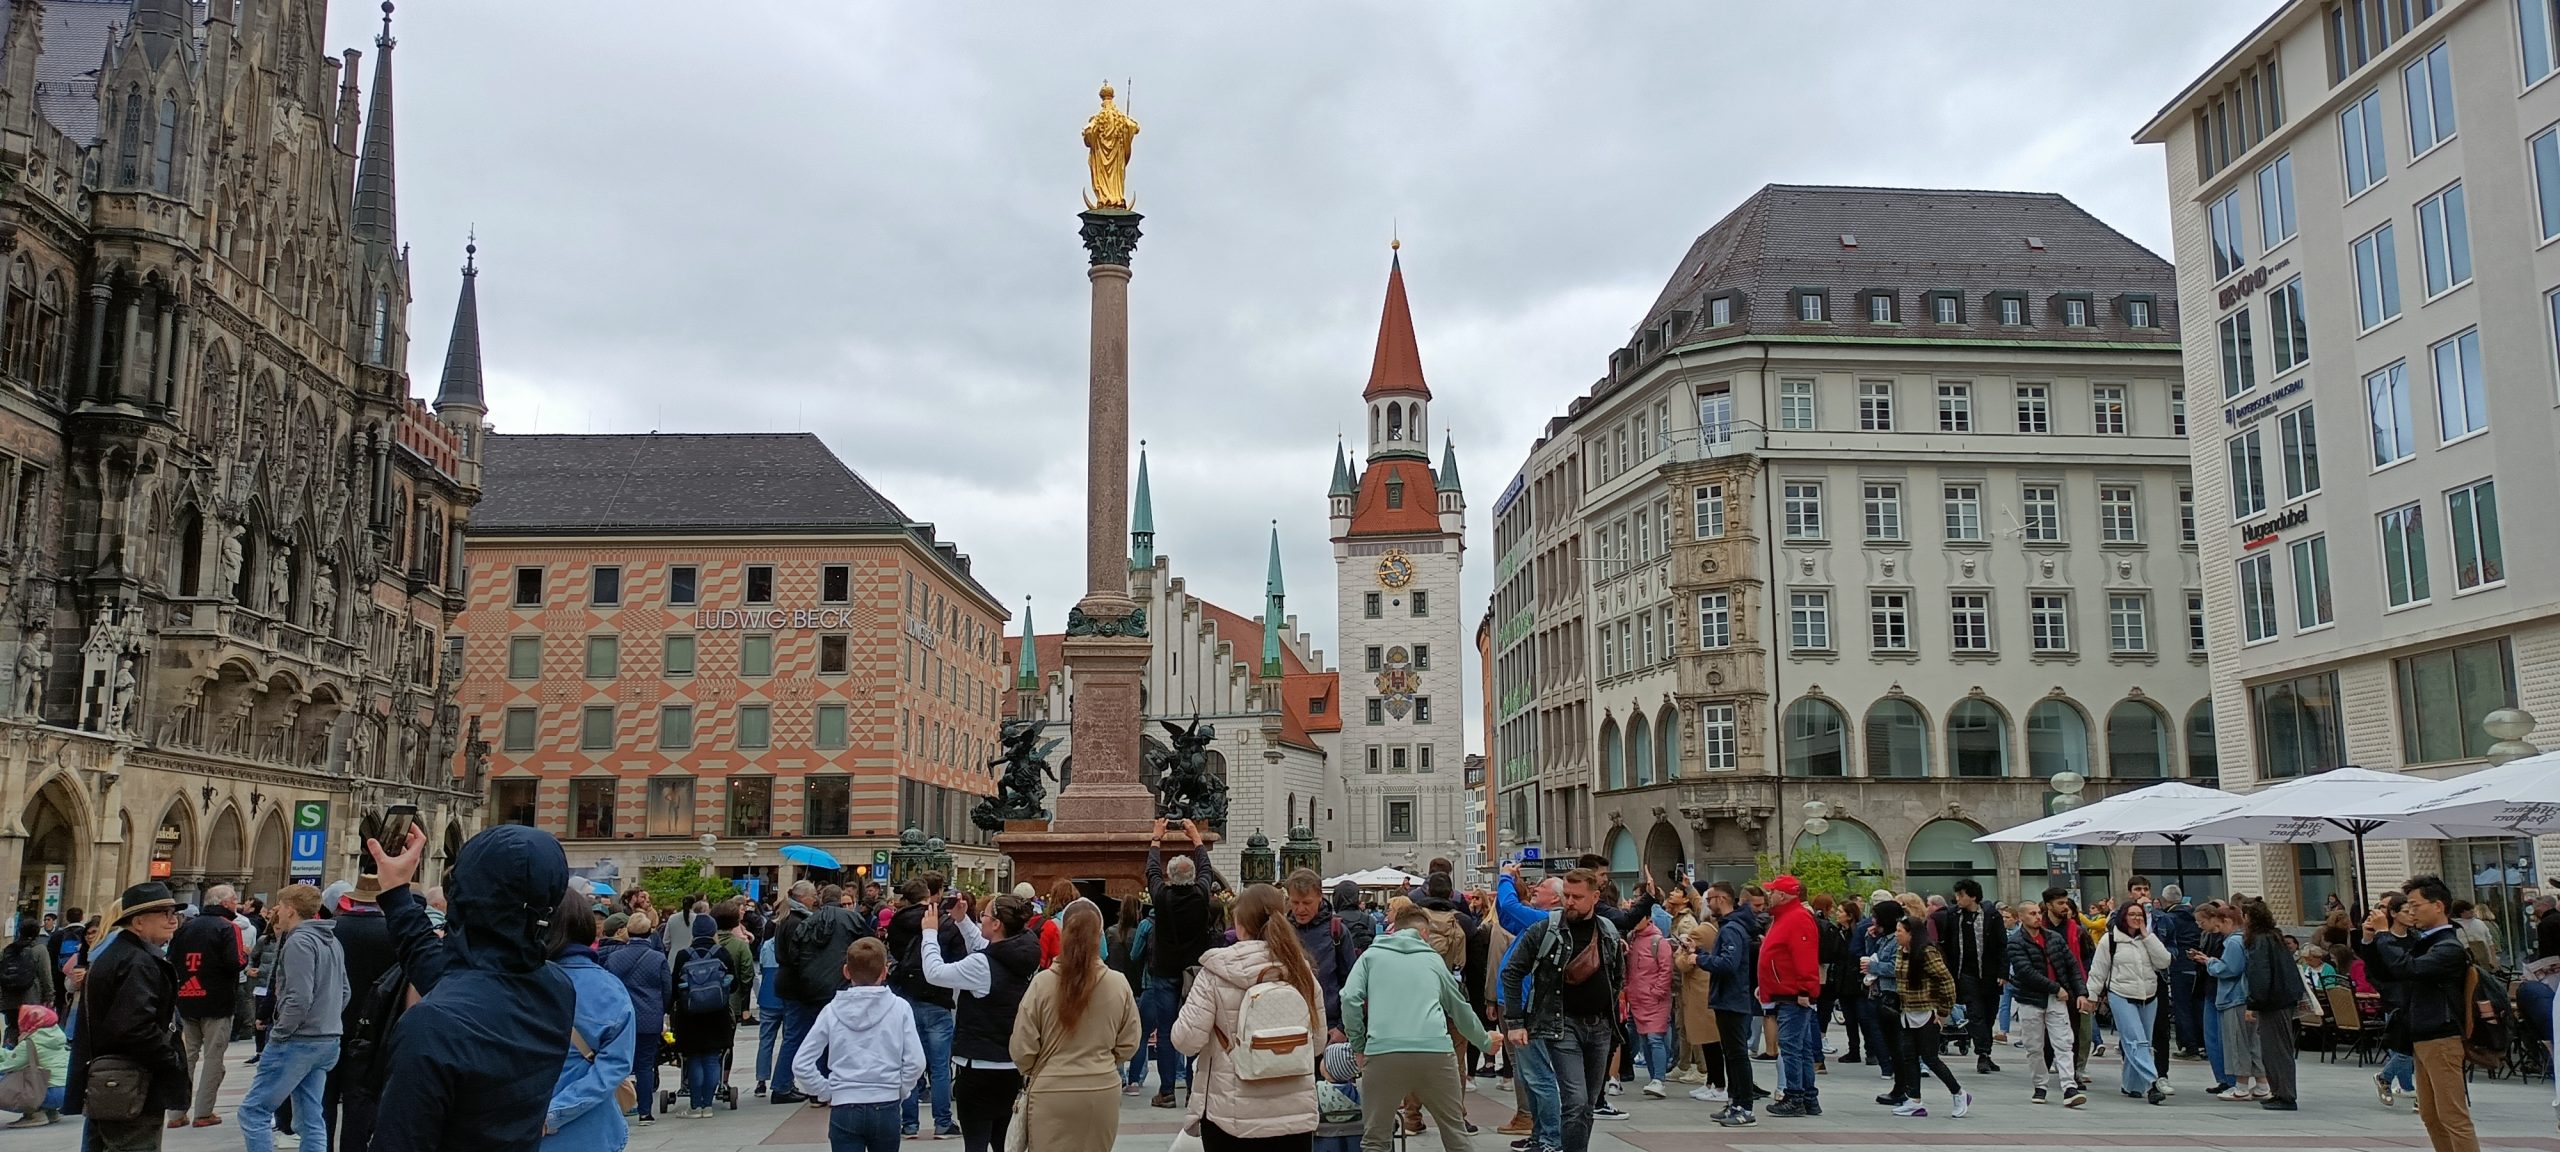 Mnichov, Mariánské náměstí / München, Marienplatz